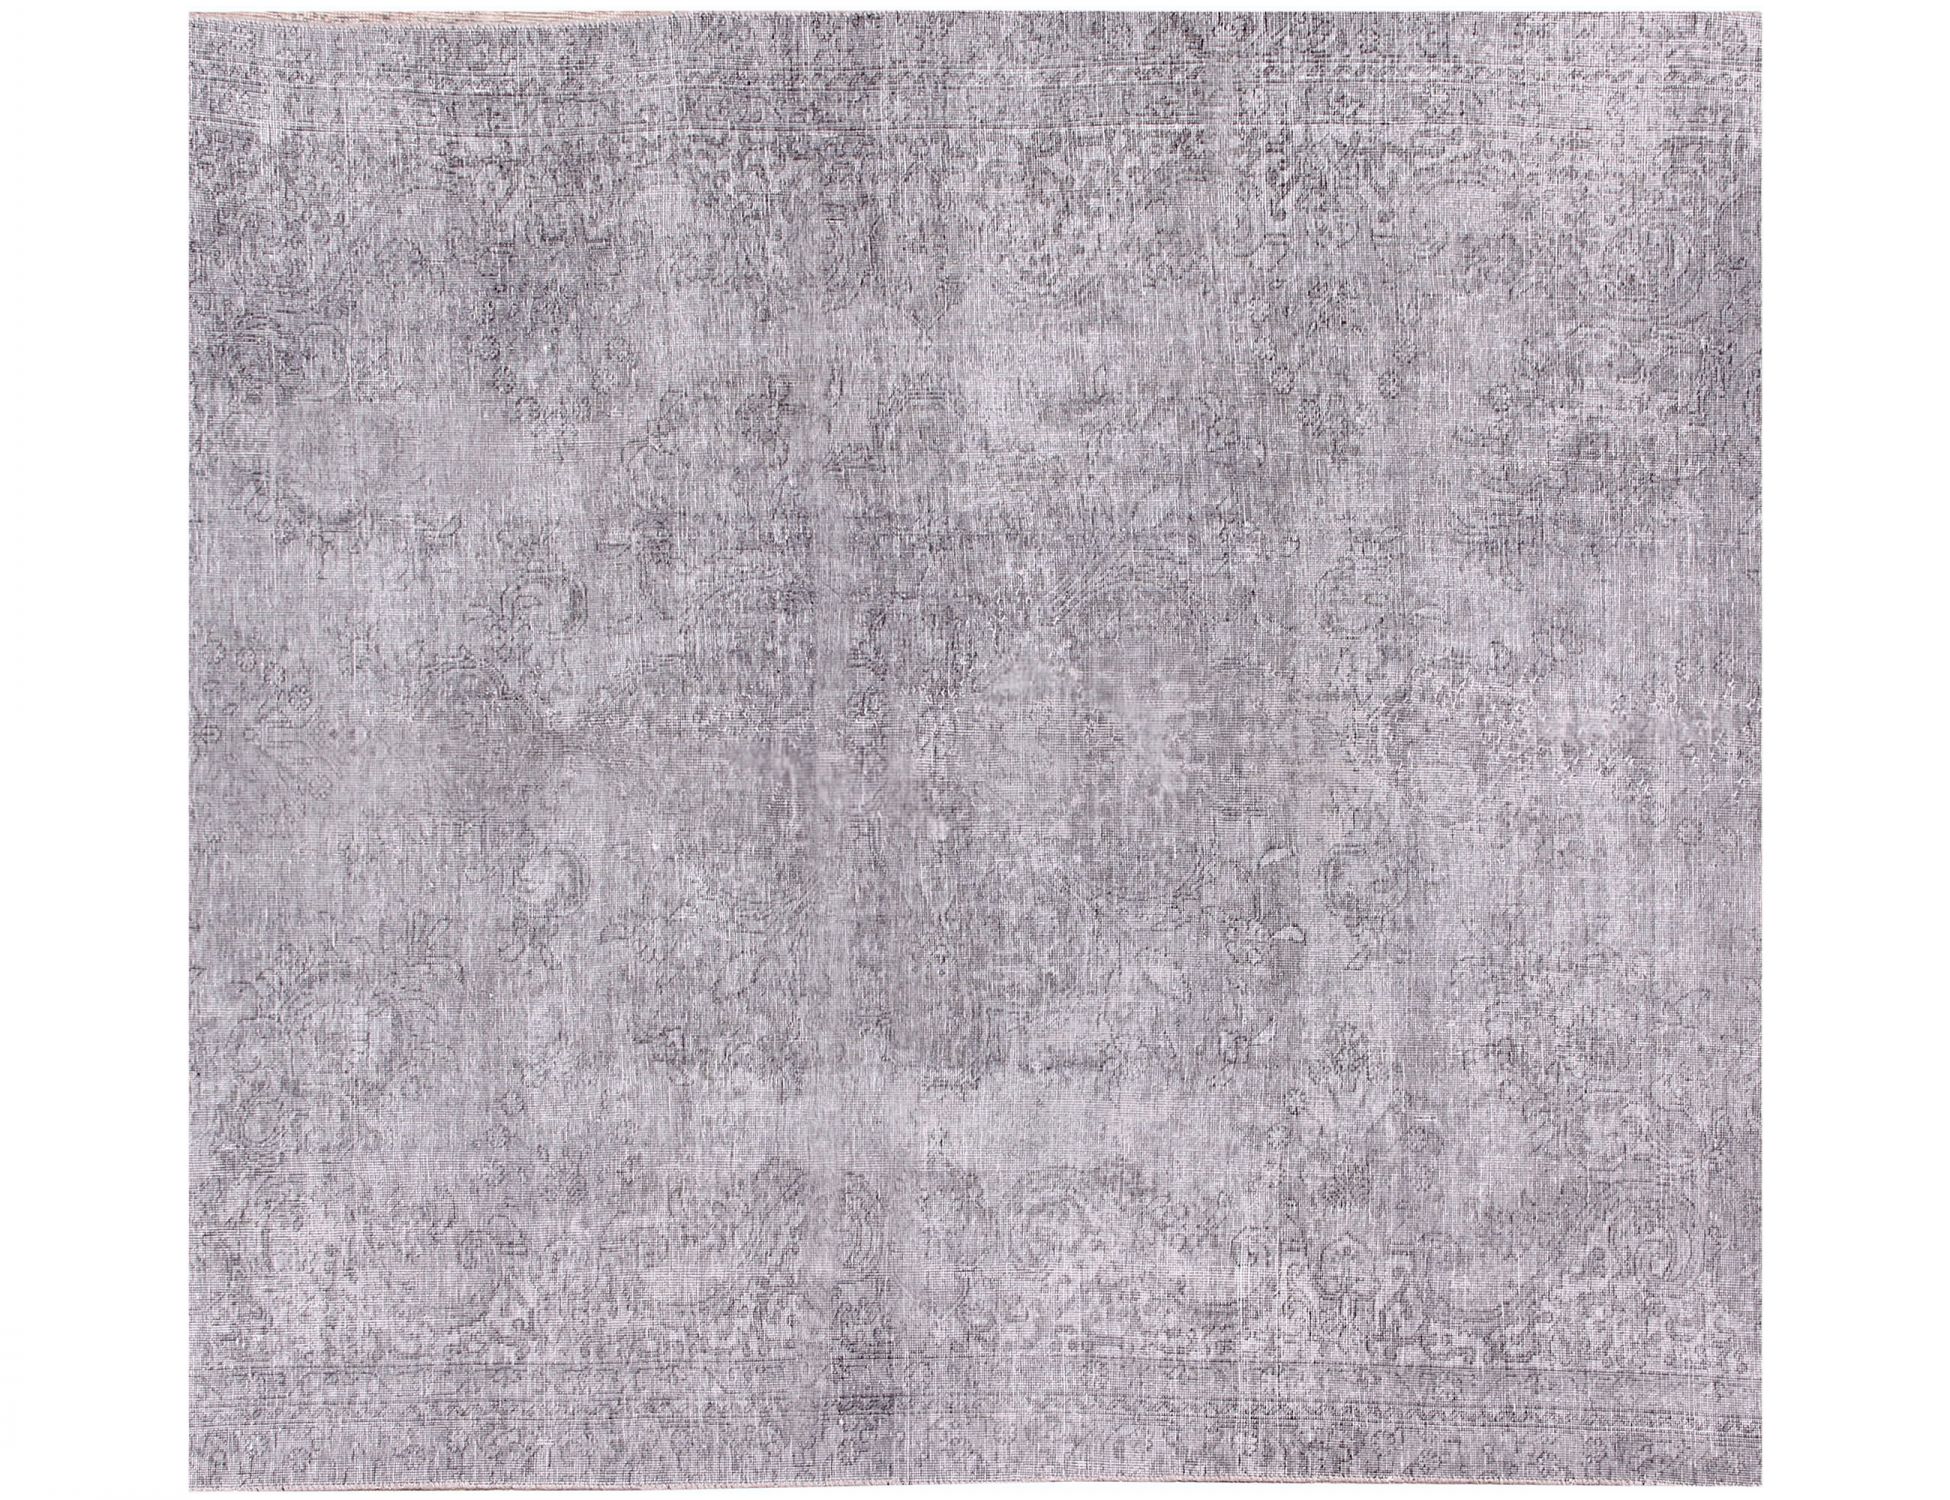 Quadrat  Vintage Teppich  grau <br/>190 x 190 cm